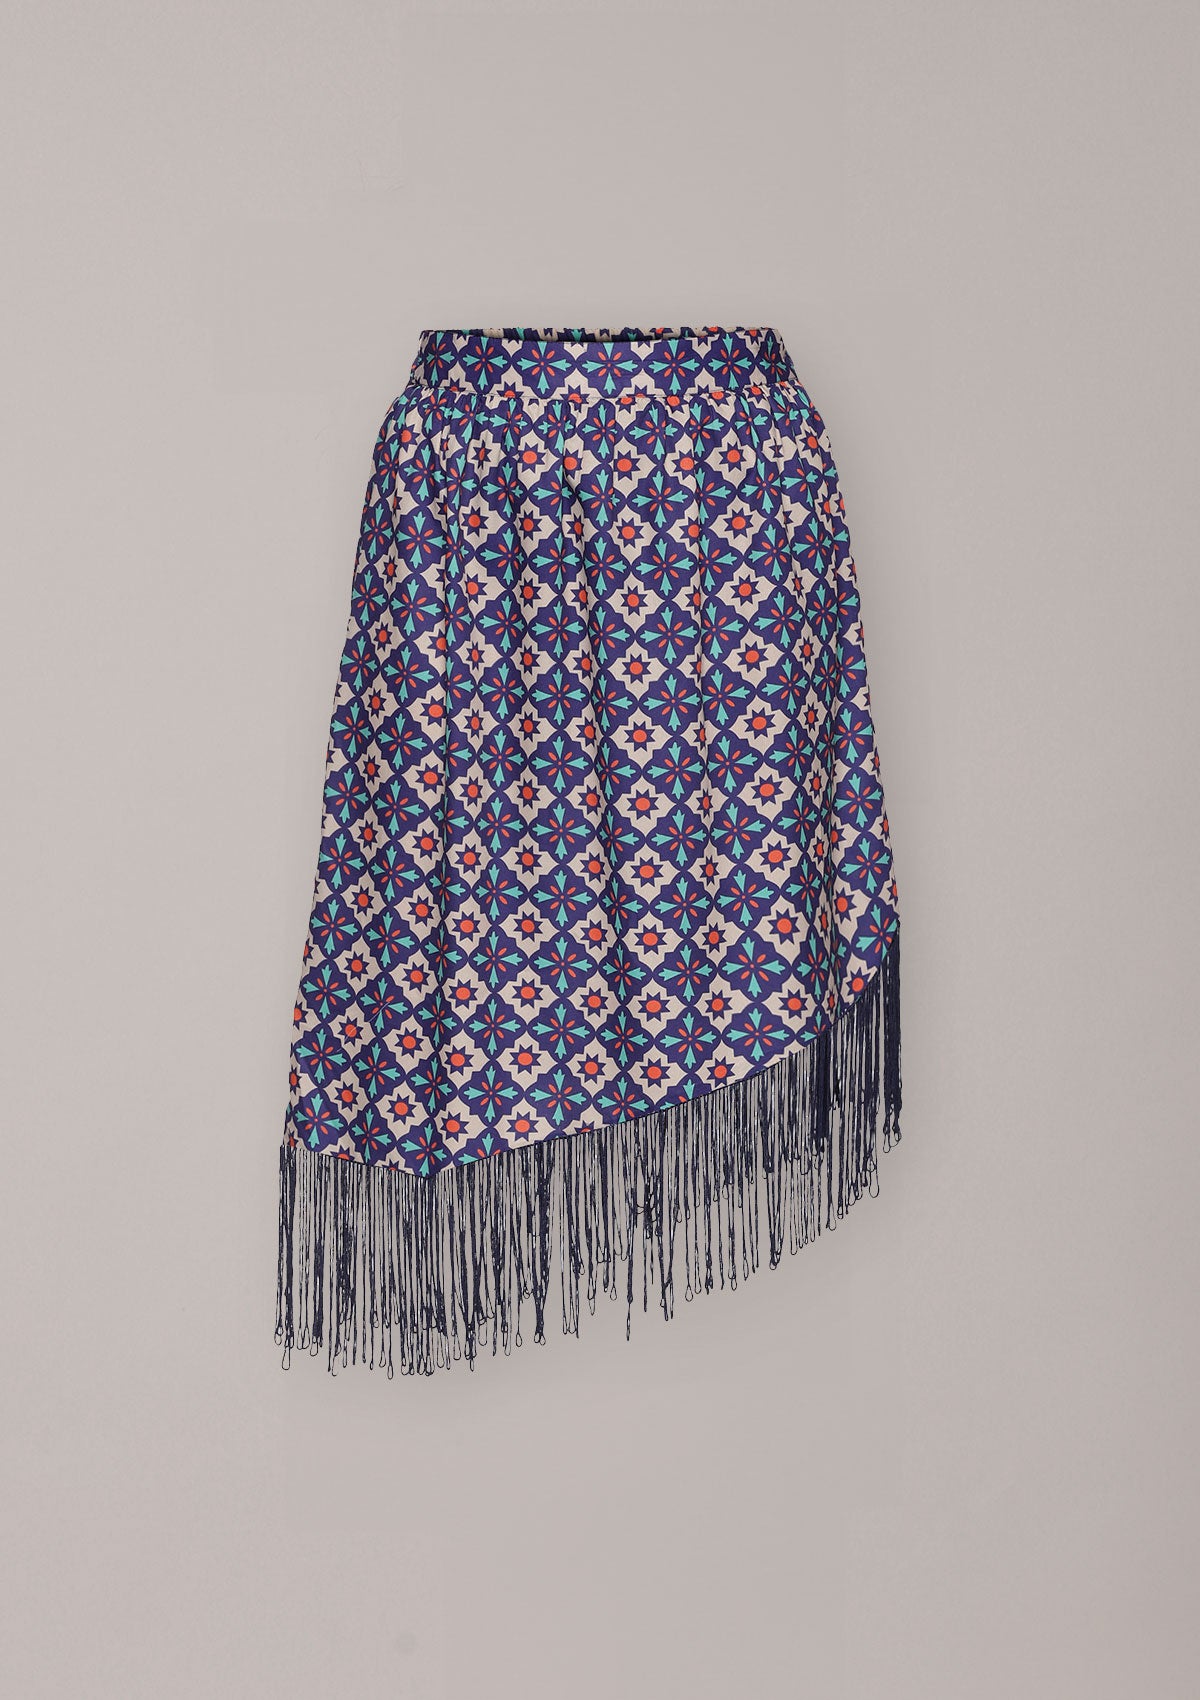 Nora - Assymetrical printed skirt - IshqMe